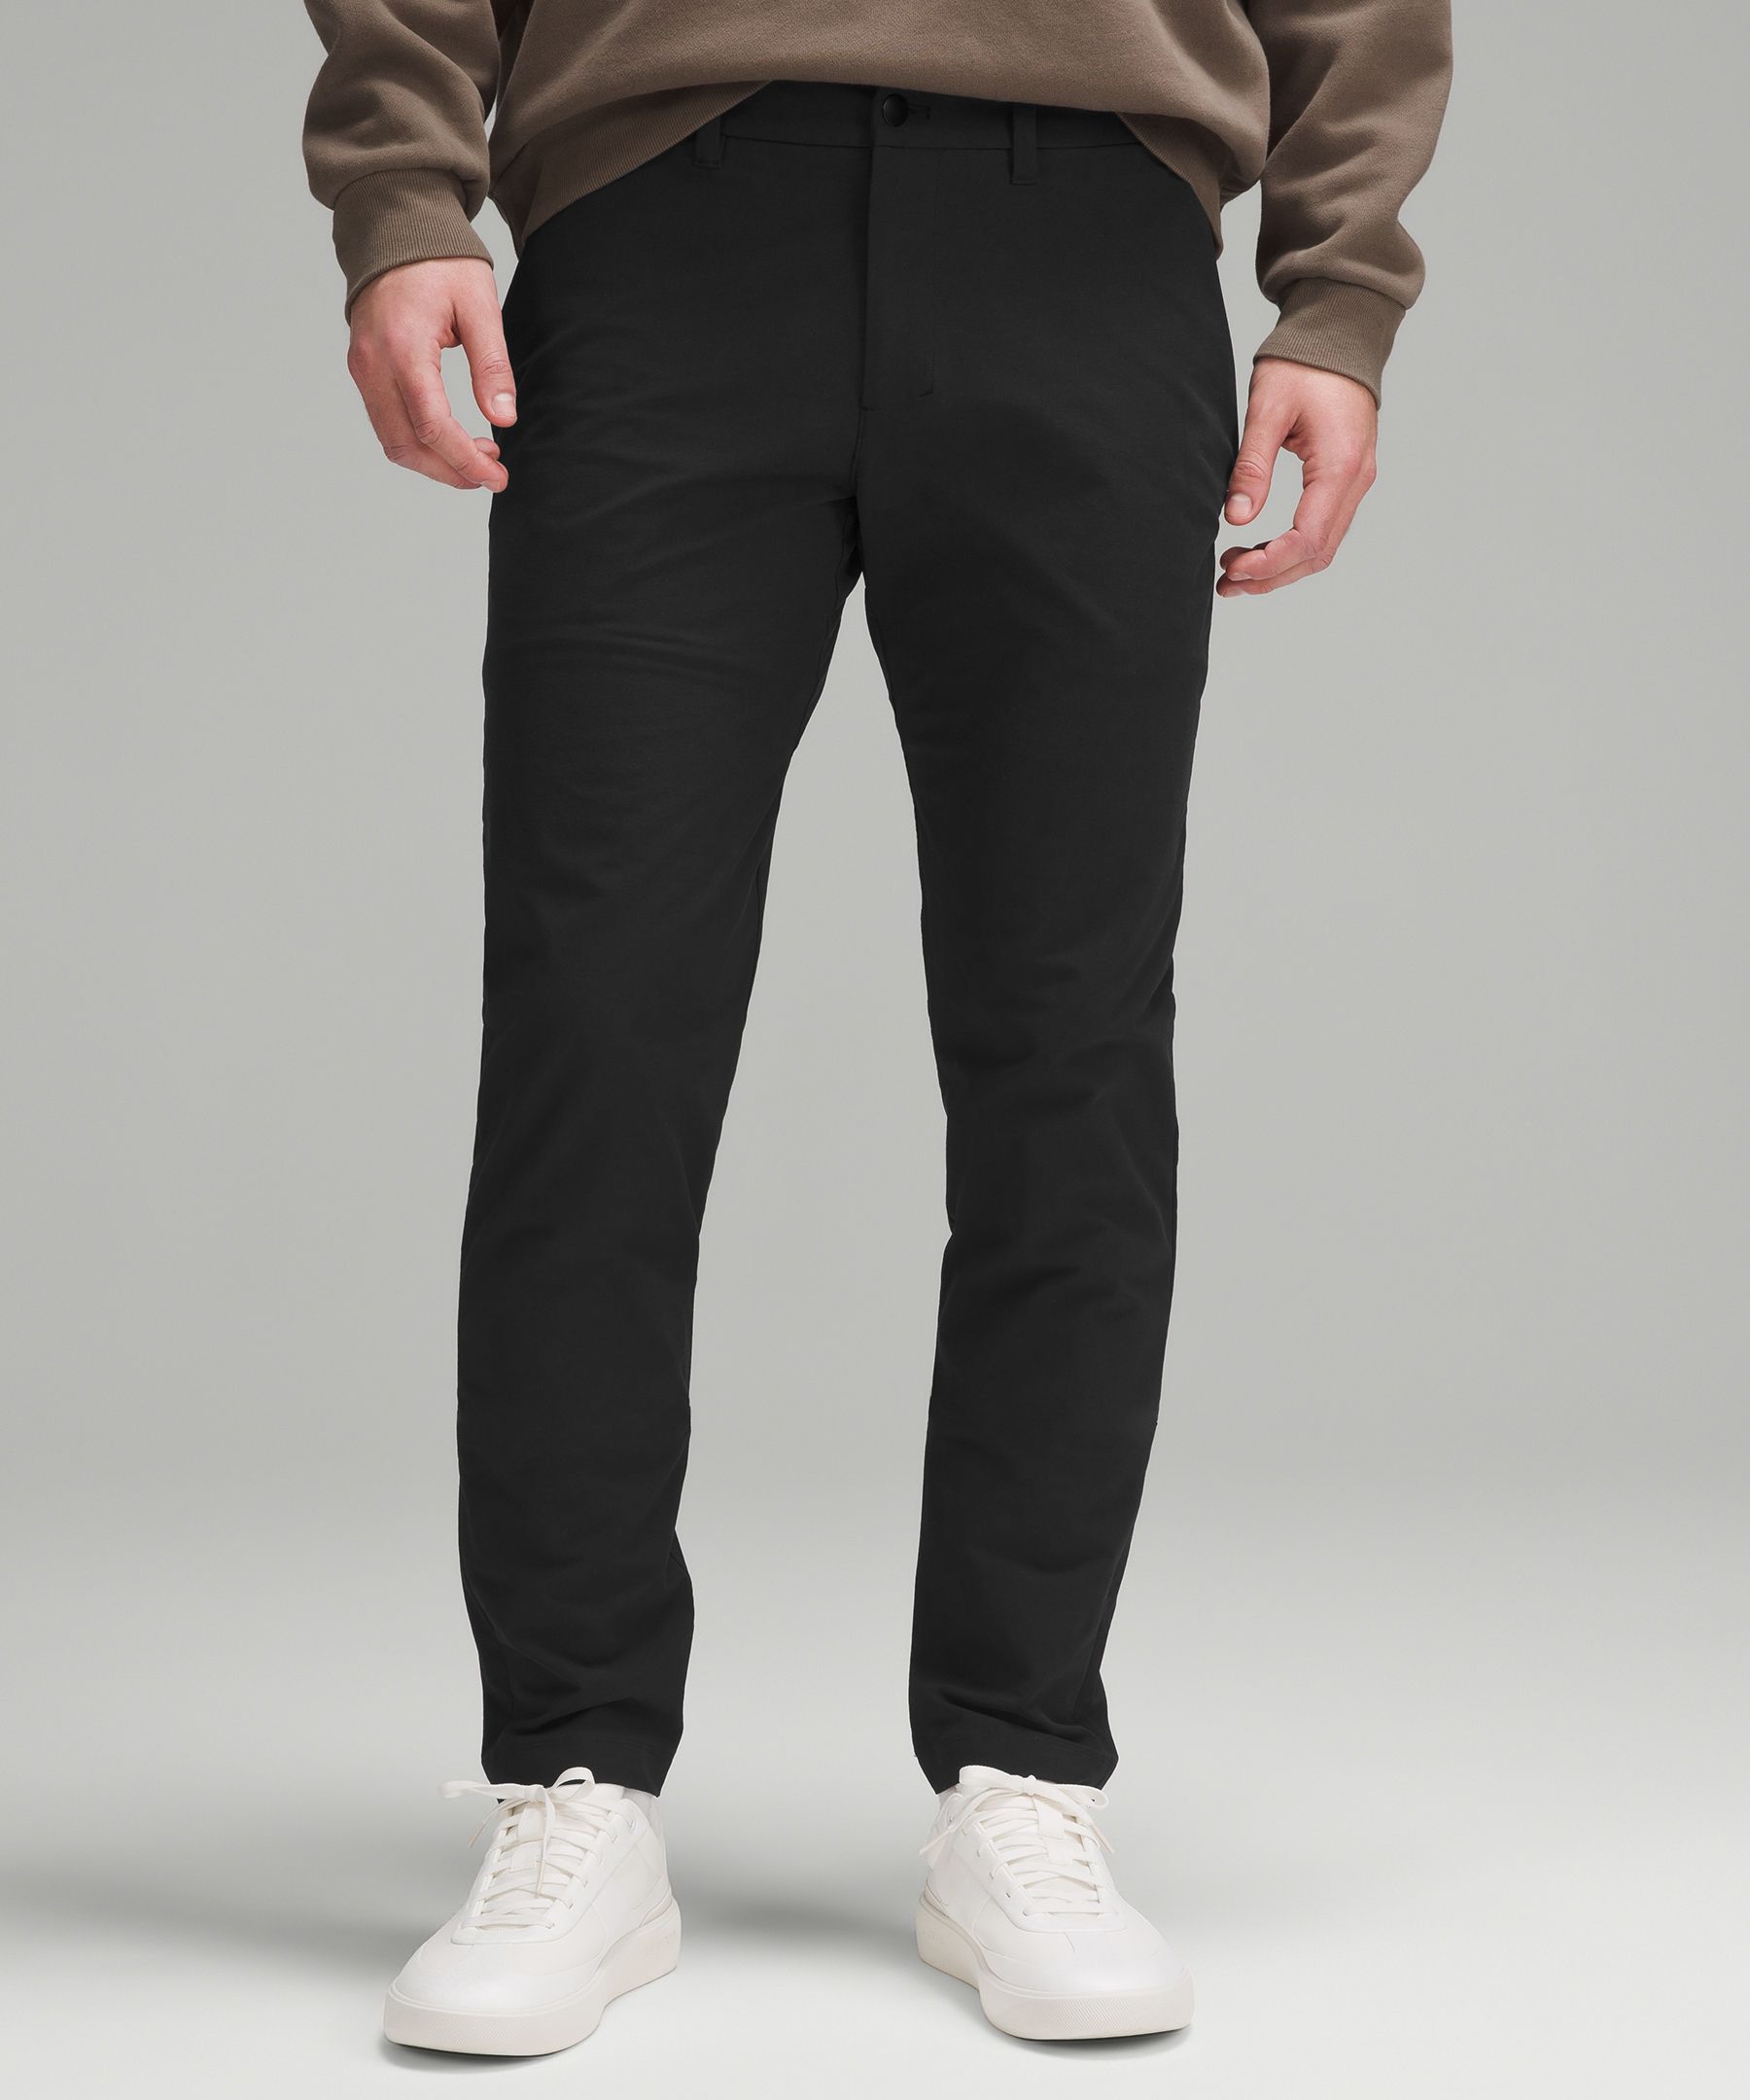 ABC Slim-Fit Trouser 34L *Stretch Cotton VersaTwill, Men's Trousers